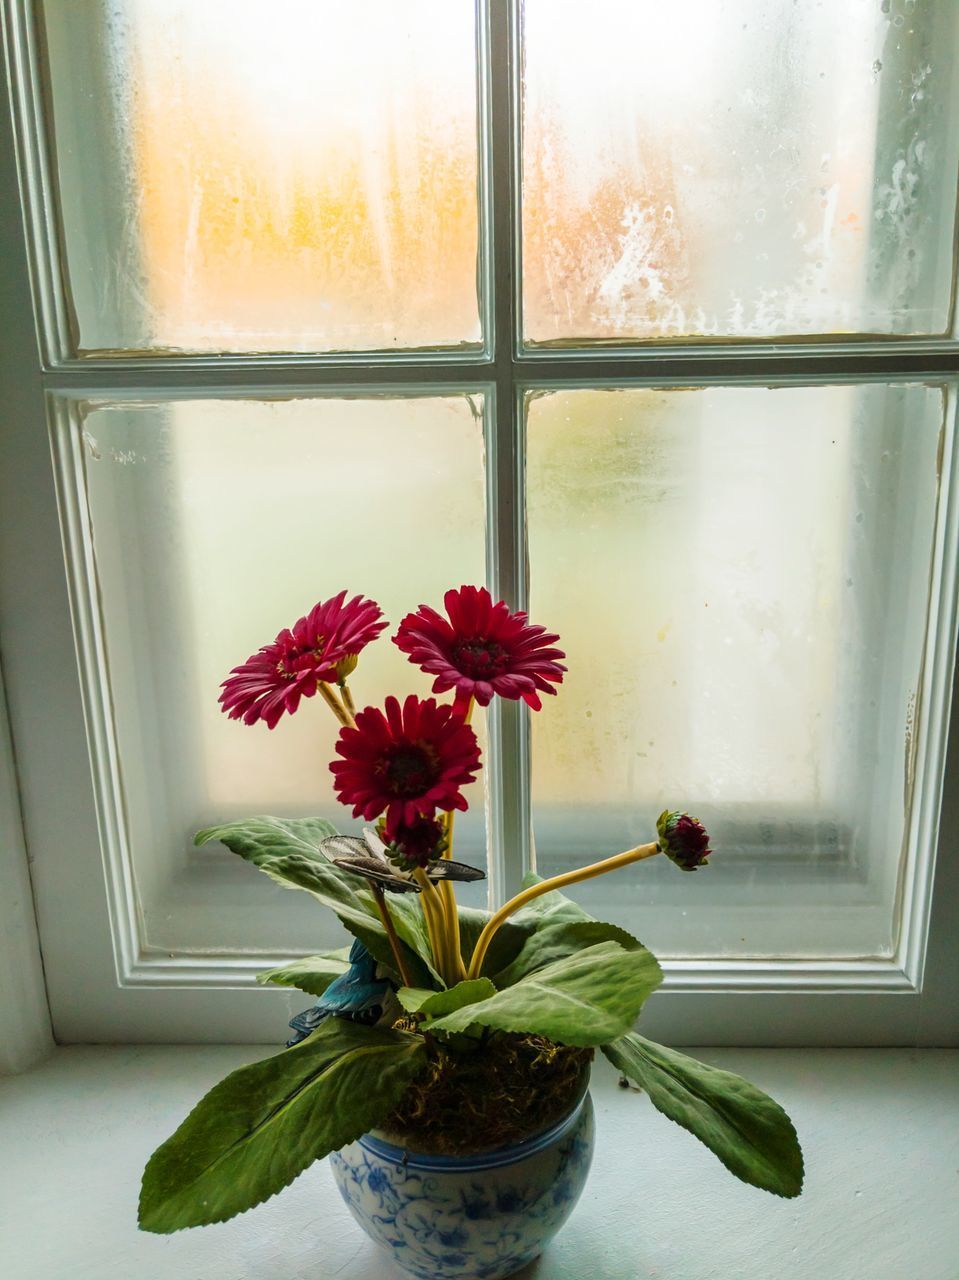 FLOWER VASE ON WINDOW SILL